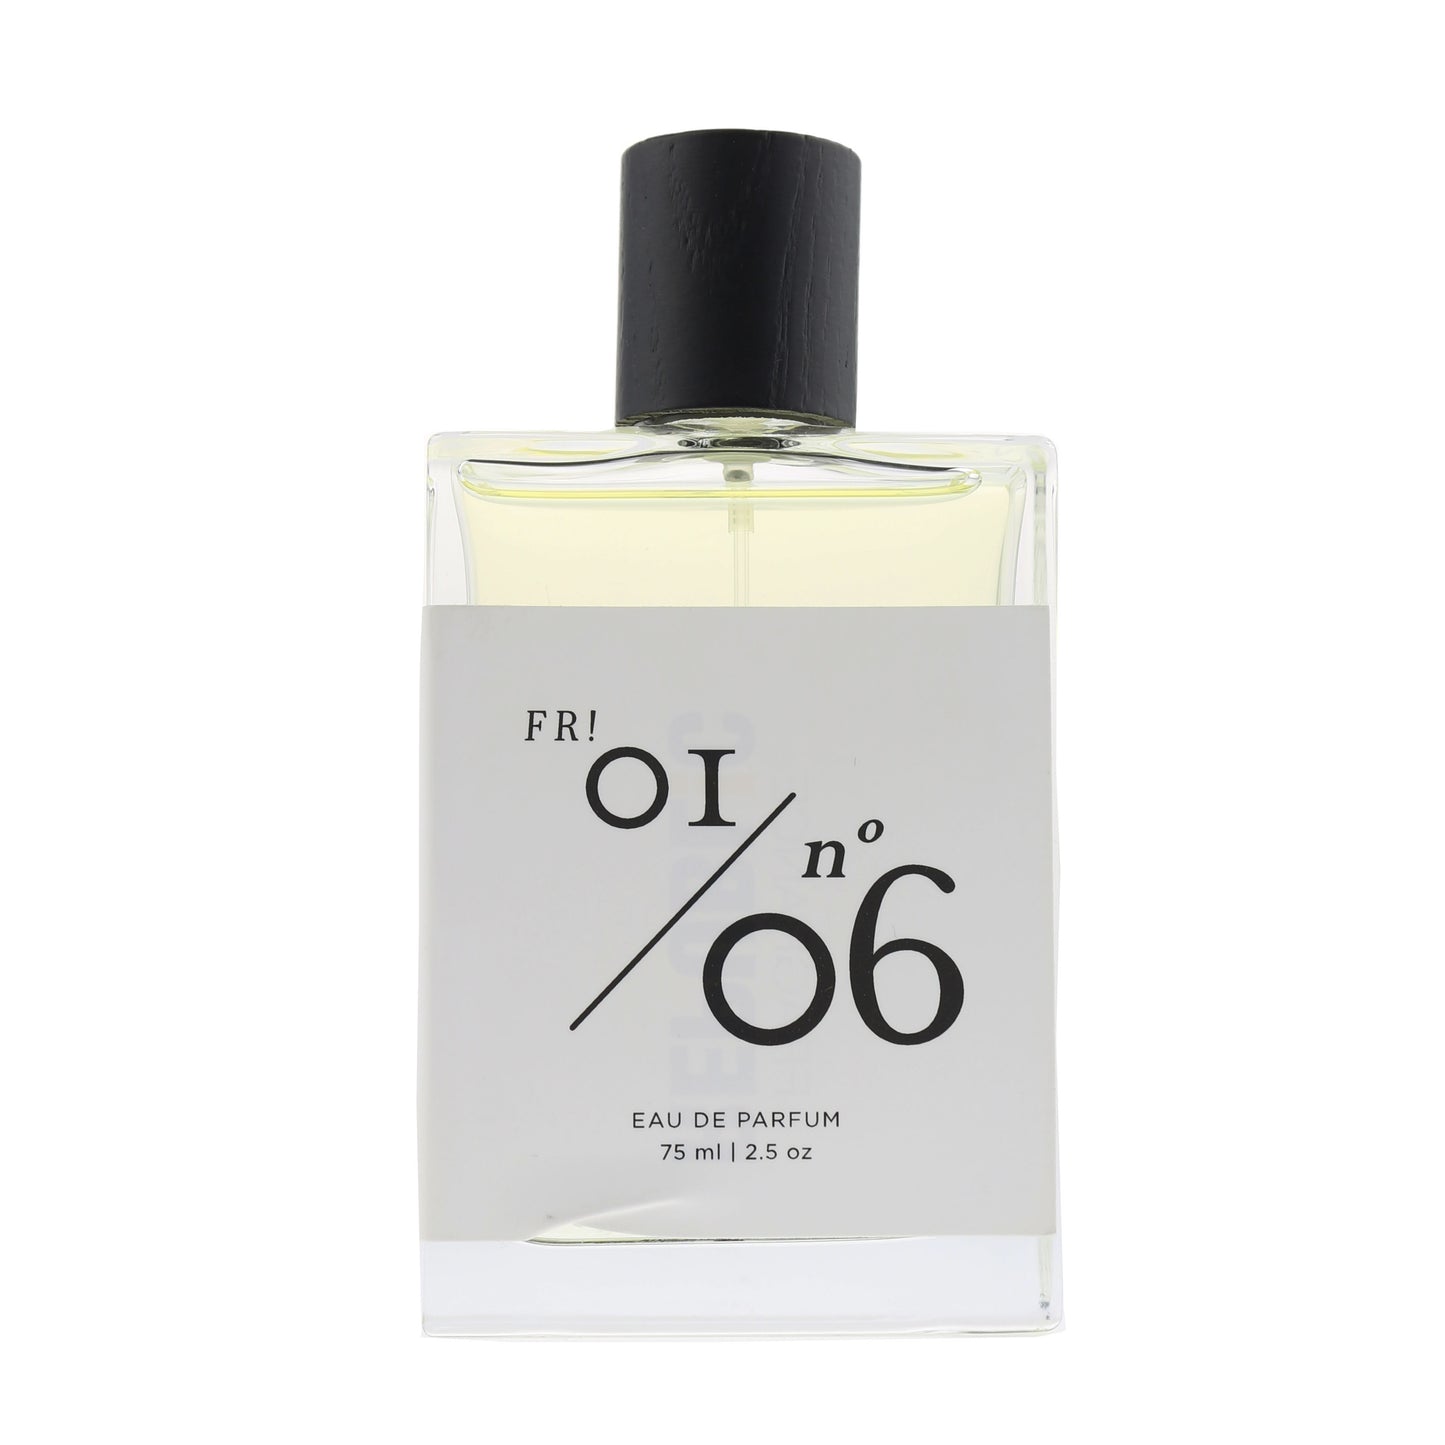 Fr! Oi/06 Eau De Parfum 75 ml